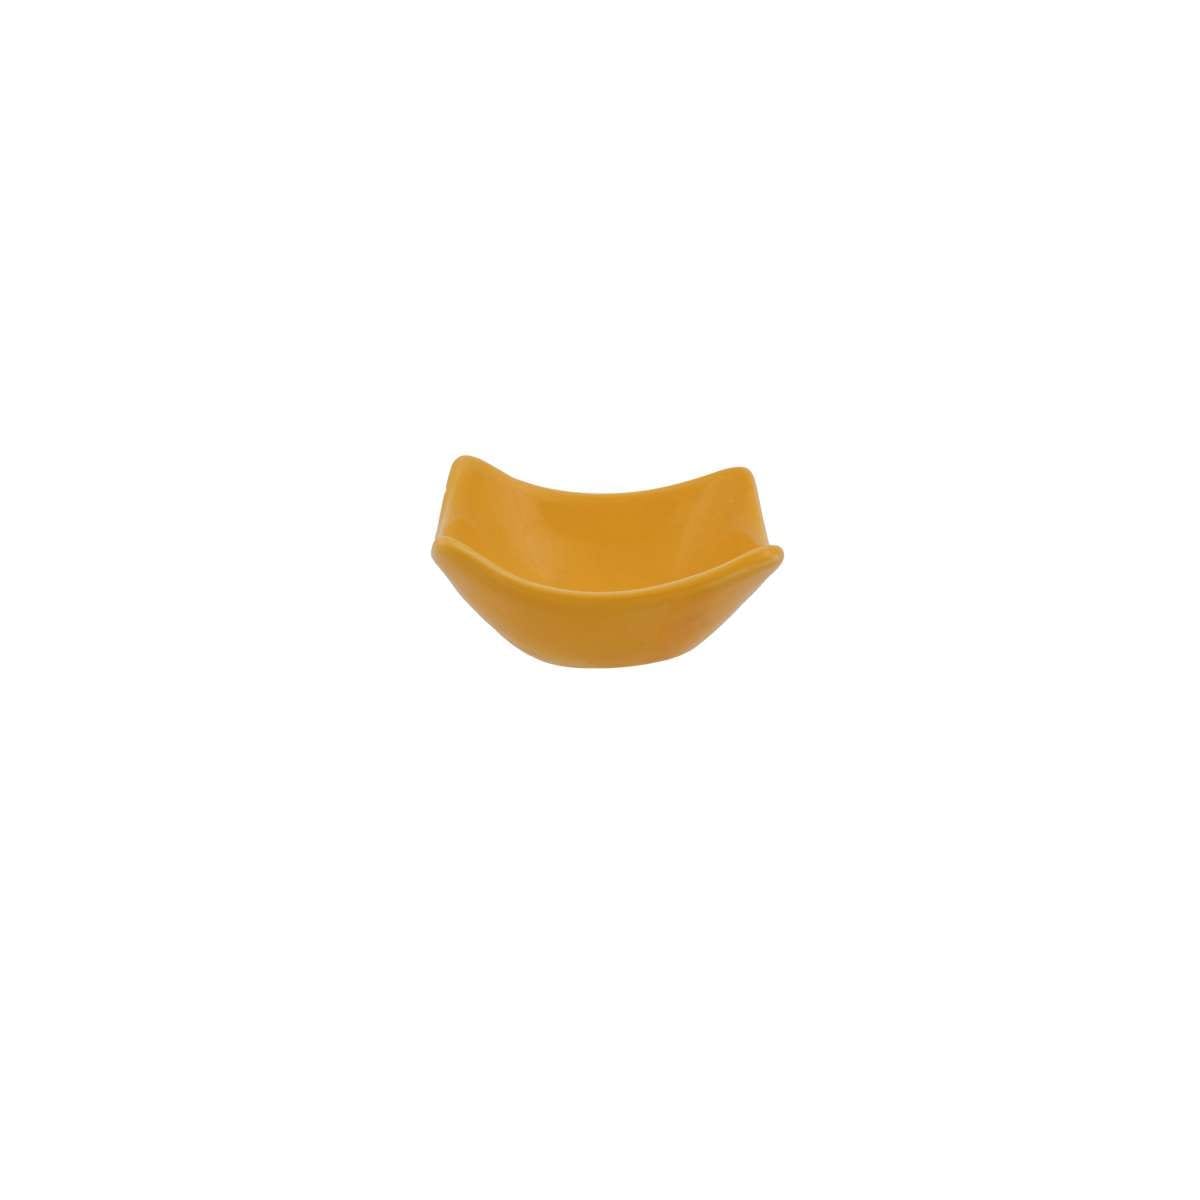 Ντιπ Πορσελάνης Κίτρινο Imagination Art Et Lumiere 7,5x3,5εκ. 06767 (Σετ 6 Τεμάχια) (Υλικό: Πορσελάνη, Χρώμα: Κίτρινο ) - Art Et Lumiere - lumiere_06767 138548